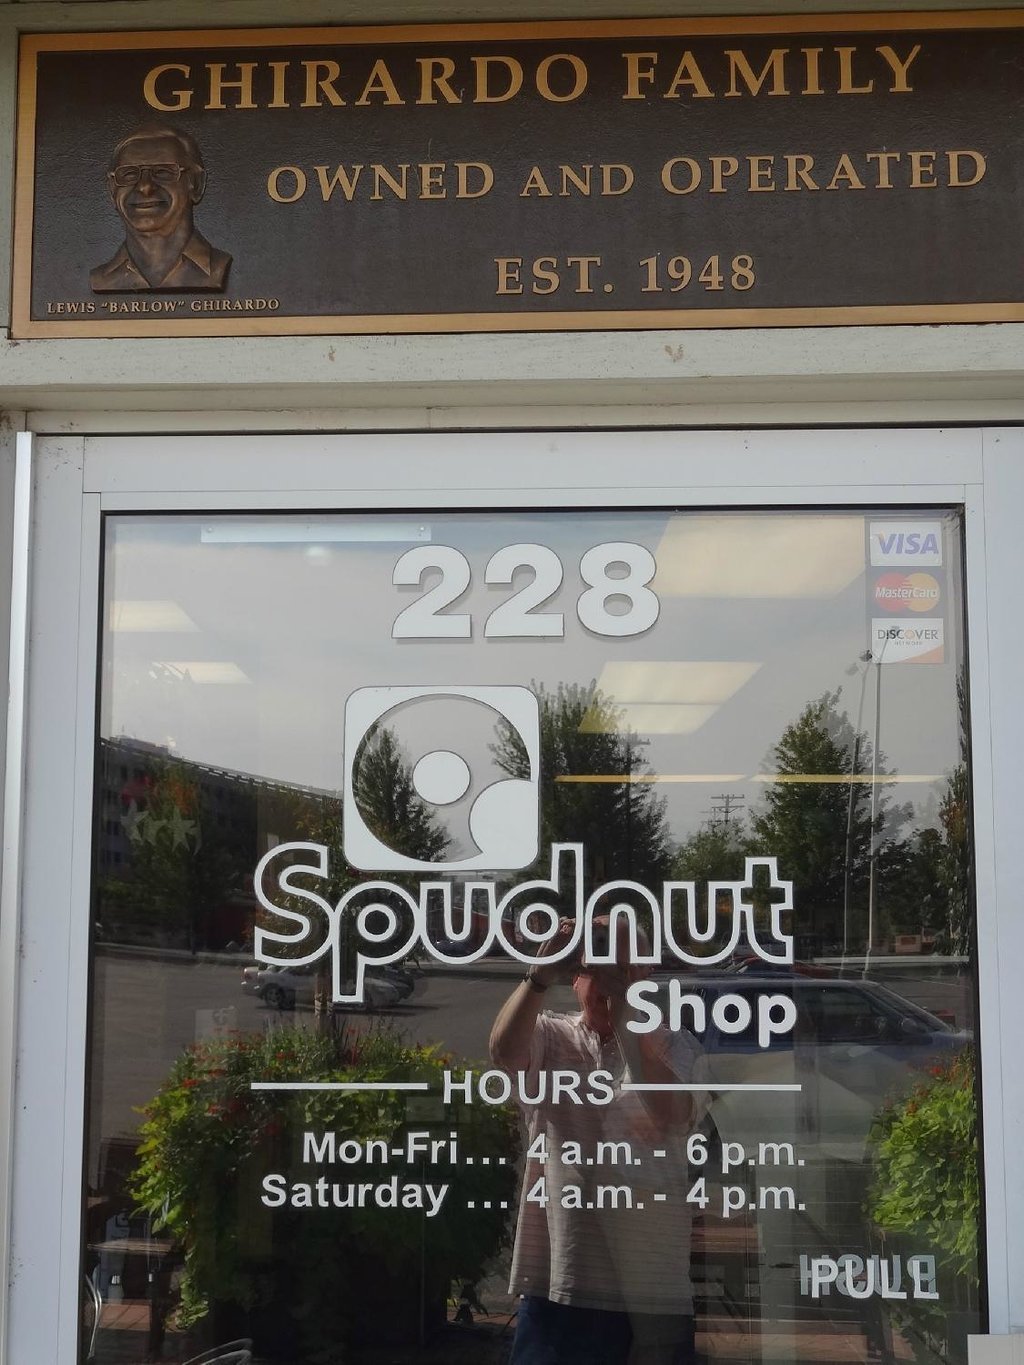 Spudnut Shop